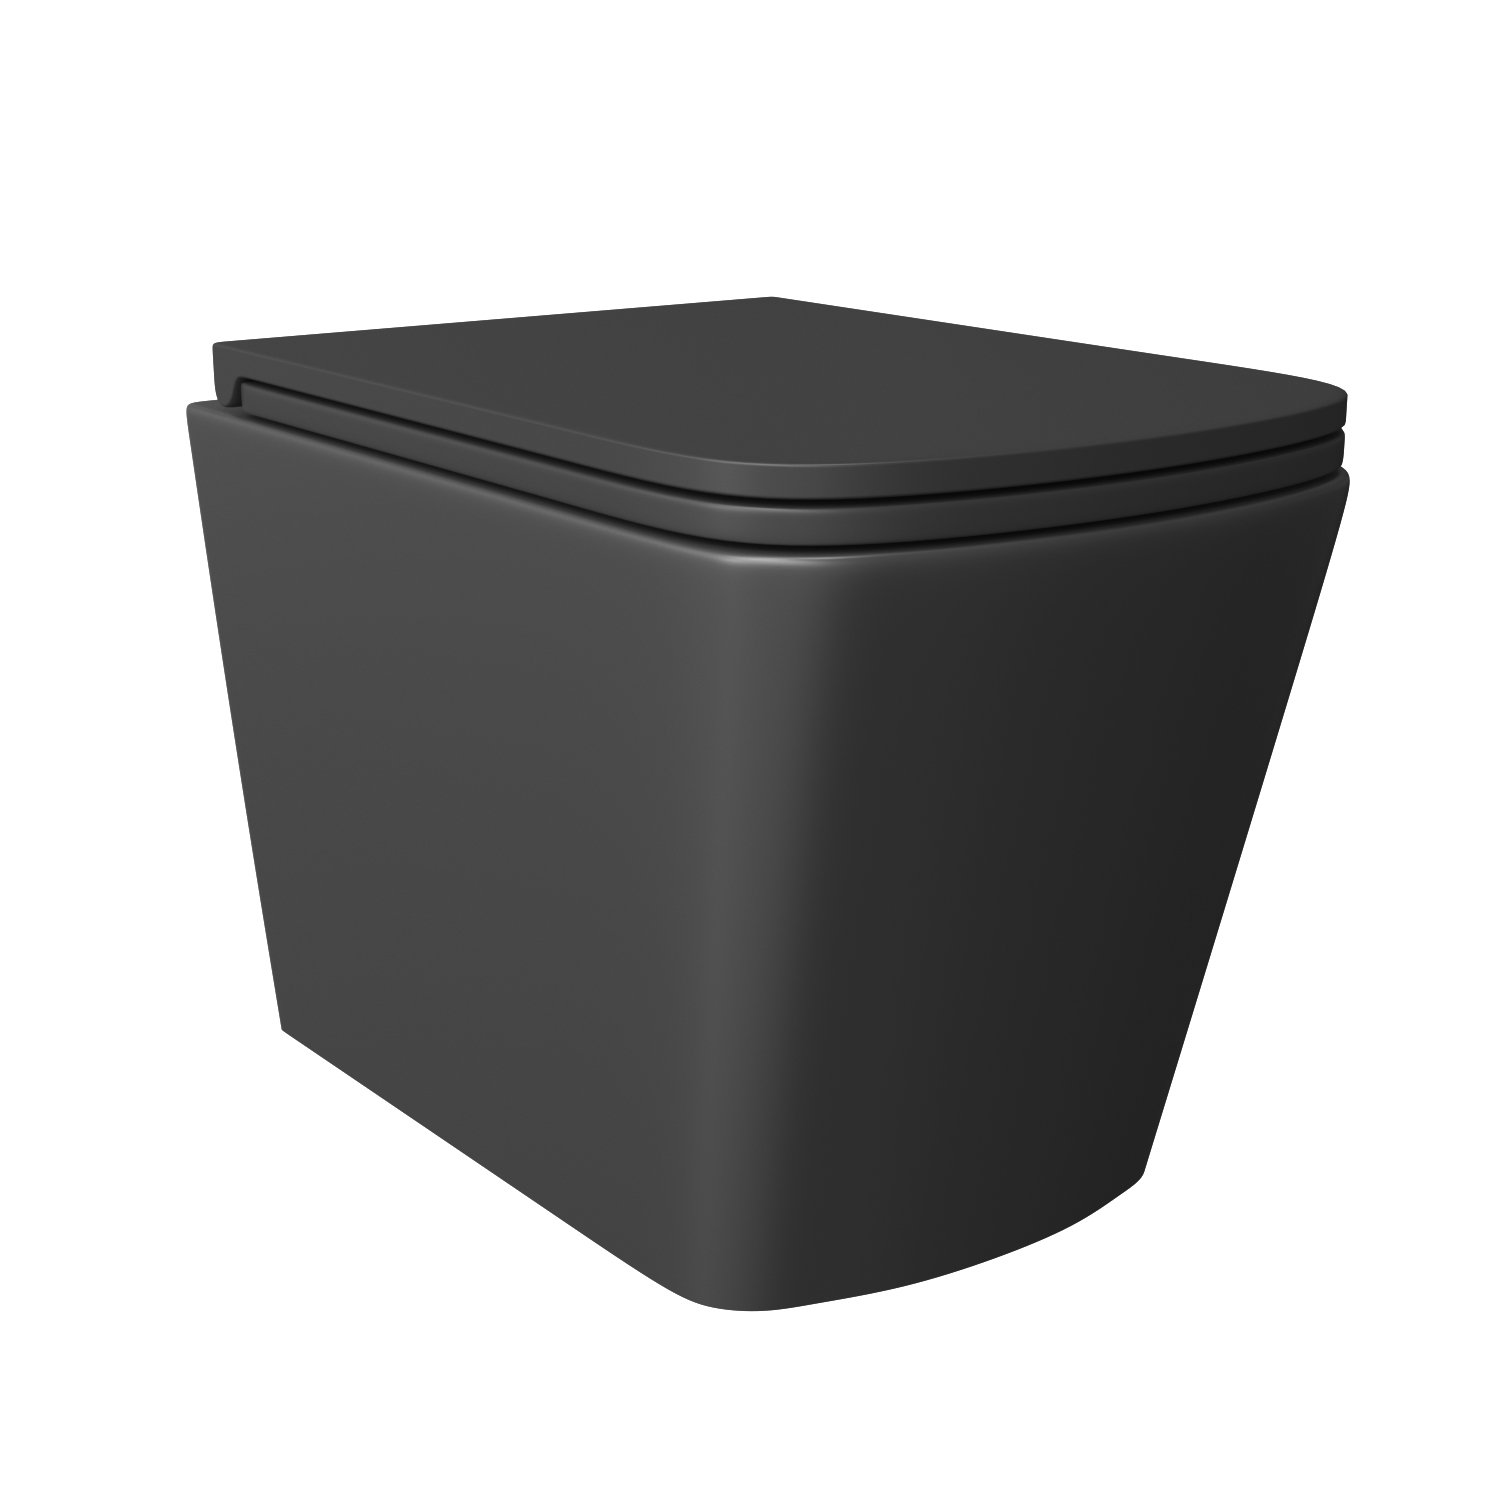 Унитаз Joki Verna Black JK3021028MB подвесной, безободковый, с сиденьем микролифт, цвет  черный матовый - фото 1